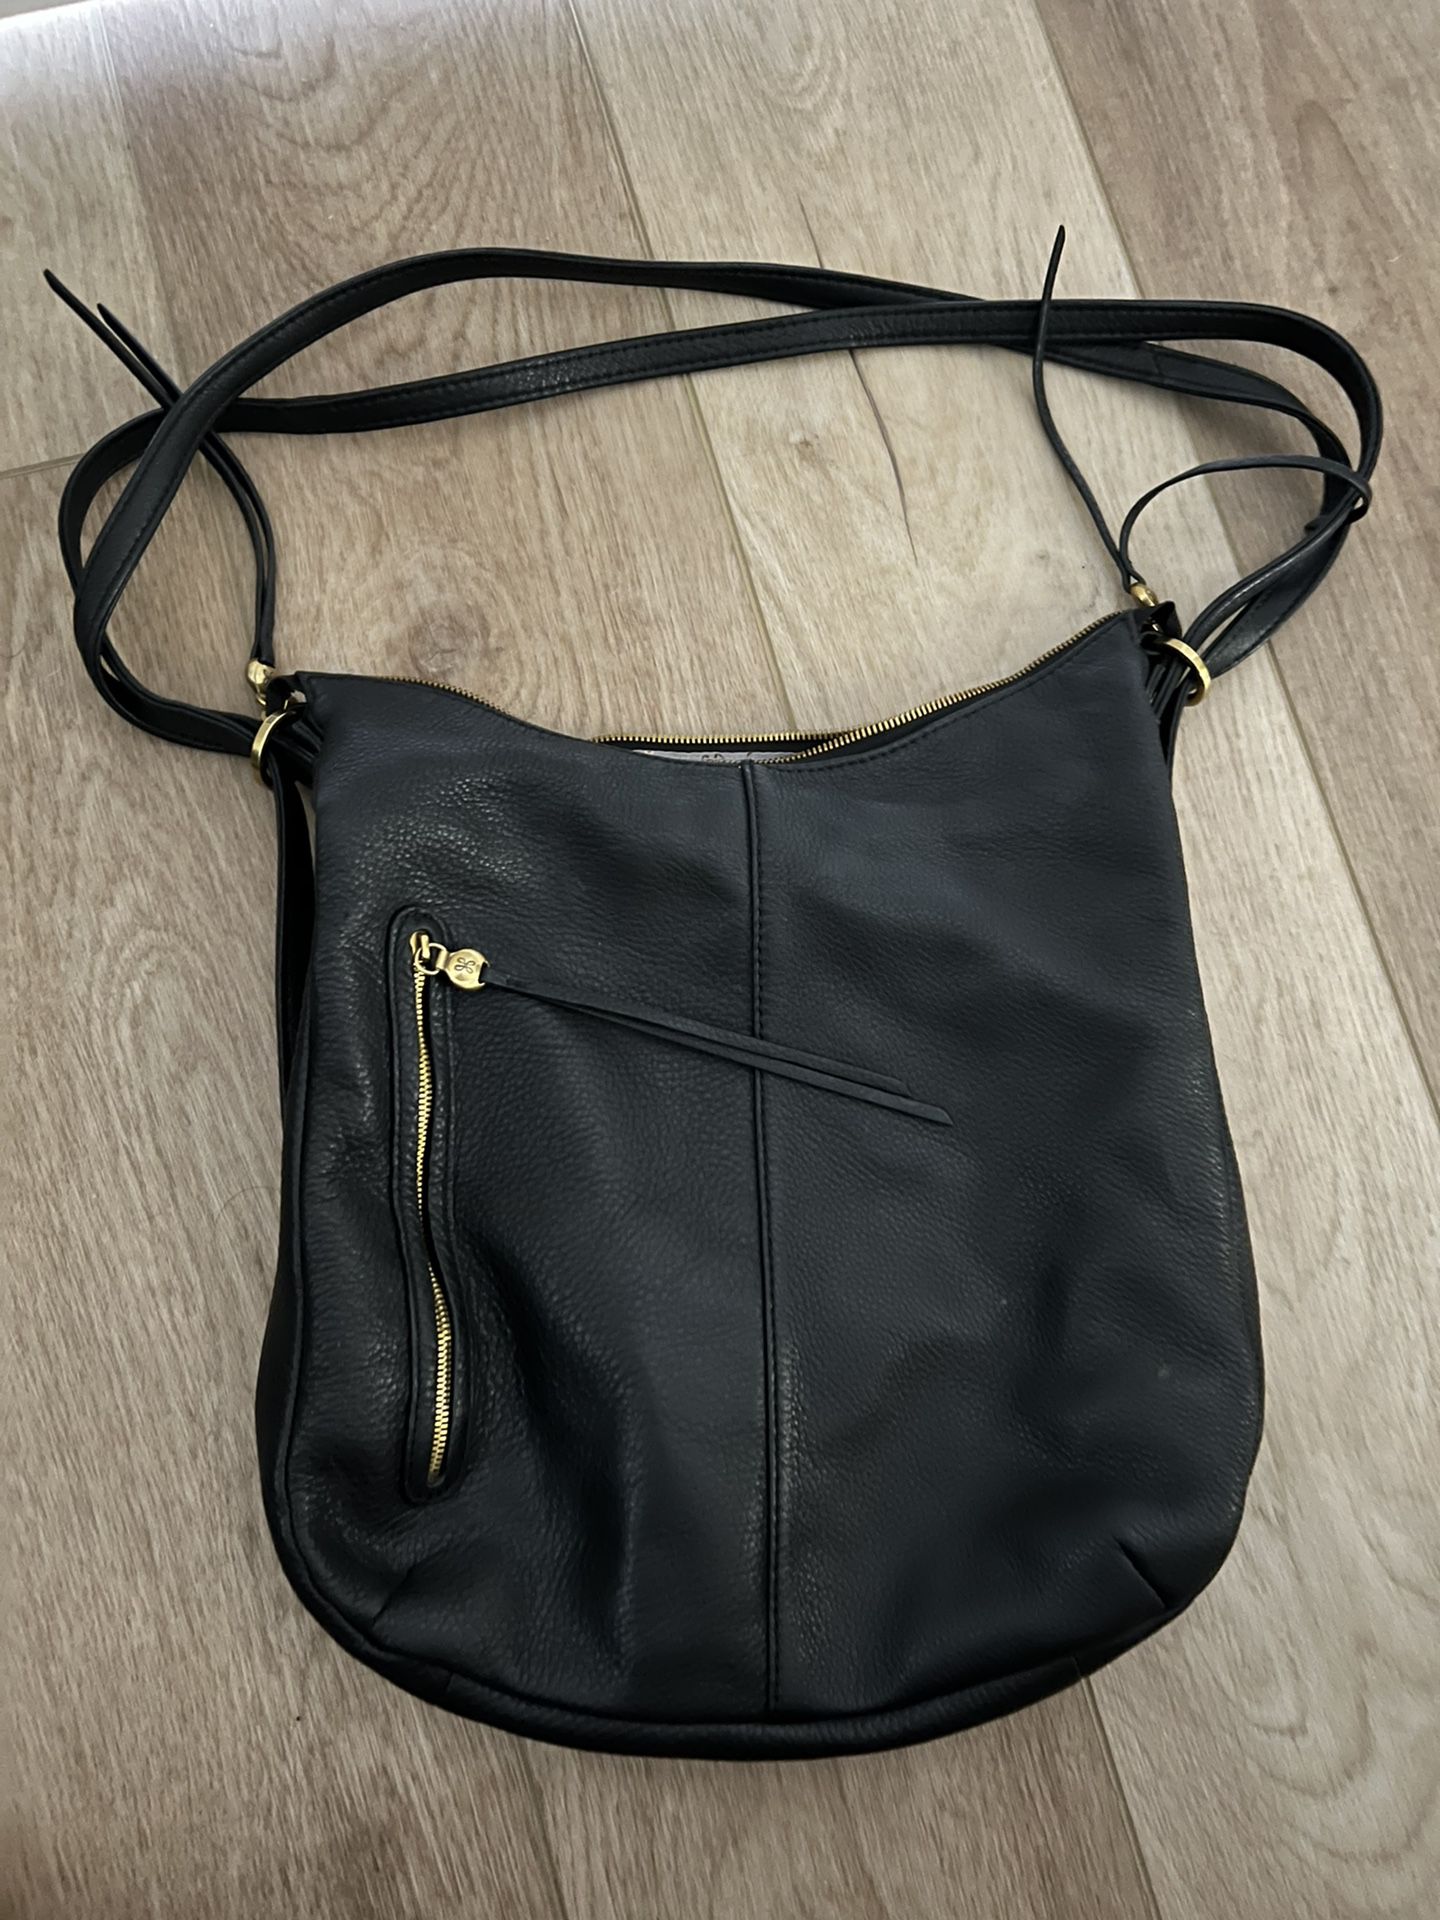 Hobo Black Leather Backpack Shoulder Purse 